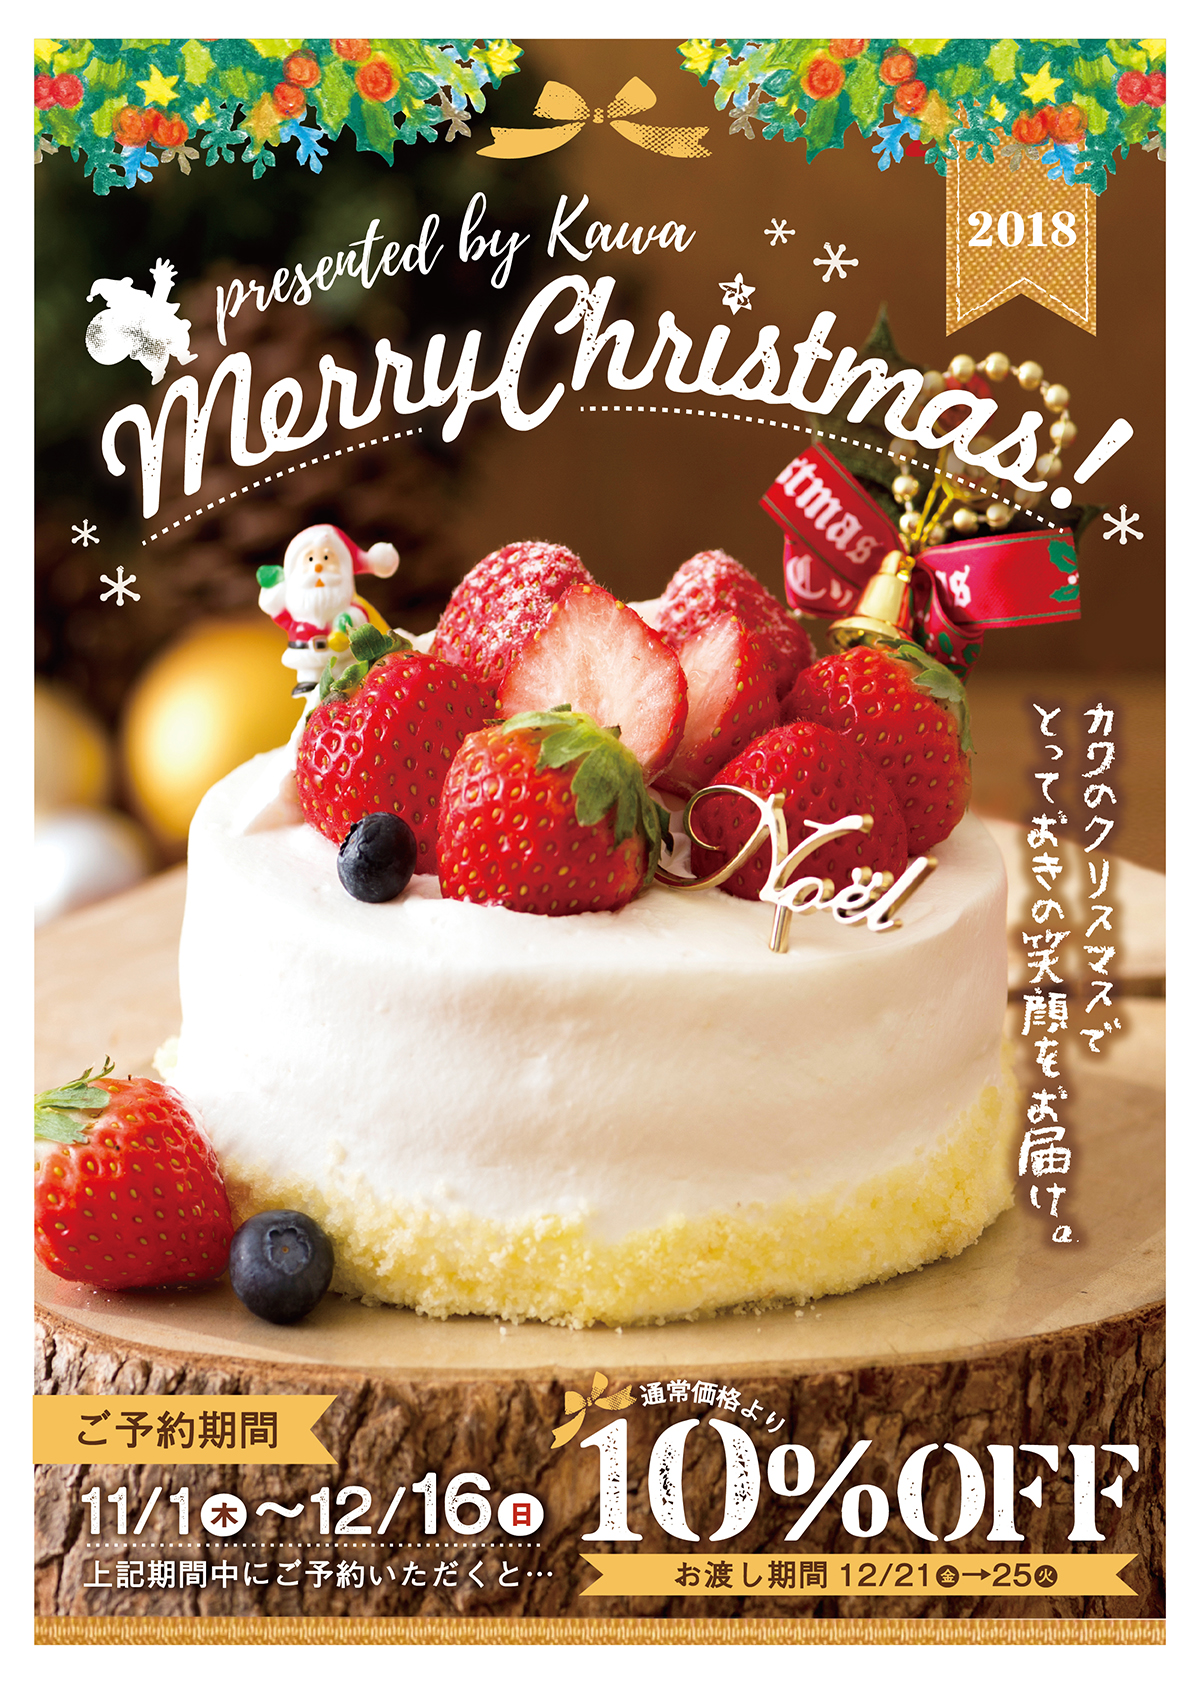 18 カワのクリスマスケーキ12月25日 火 までのお受け取り3日前までのご予約は終了致しました パン工房カワ